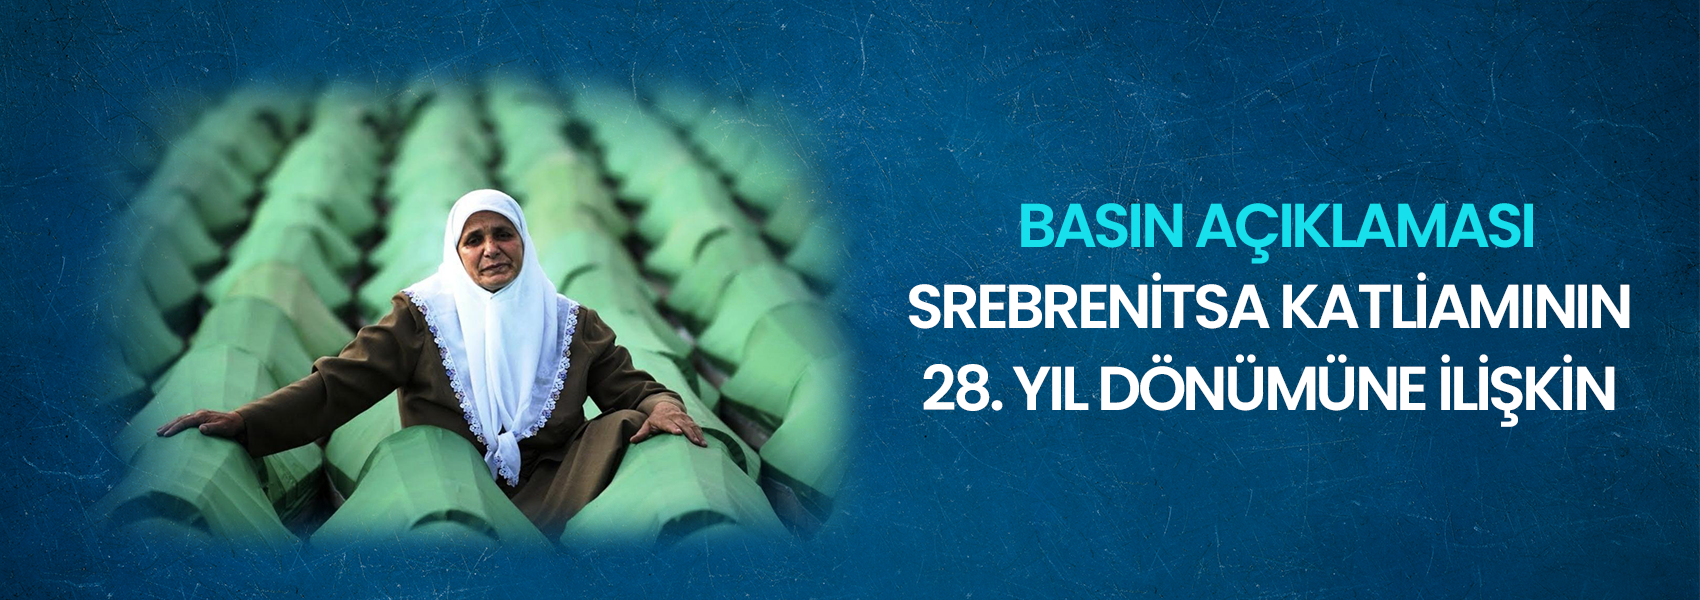 Srebrenitsa Katliamının 28. Yıl Dönümüne İlişkin Basın Açıklaması